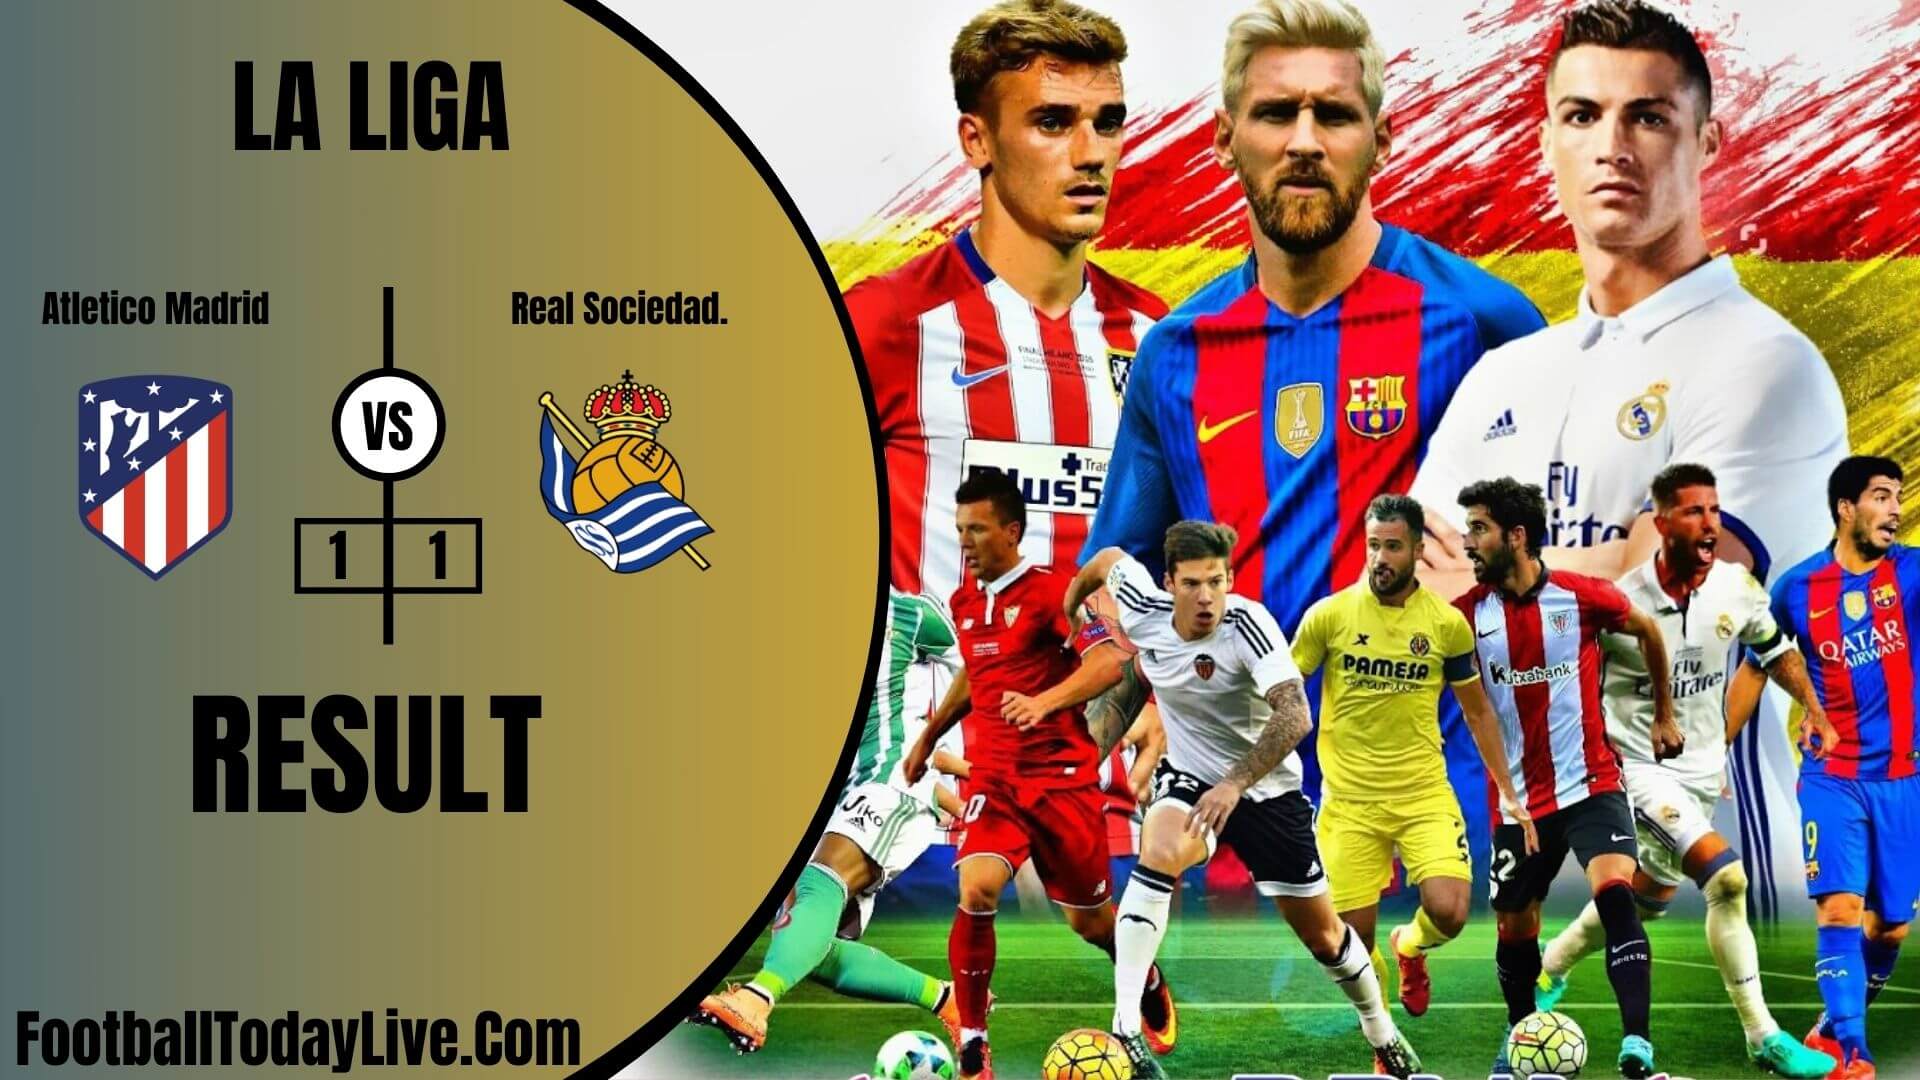 Atletico Madrid Vs Real Sociedad | La Liga Week 38 Result 2020